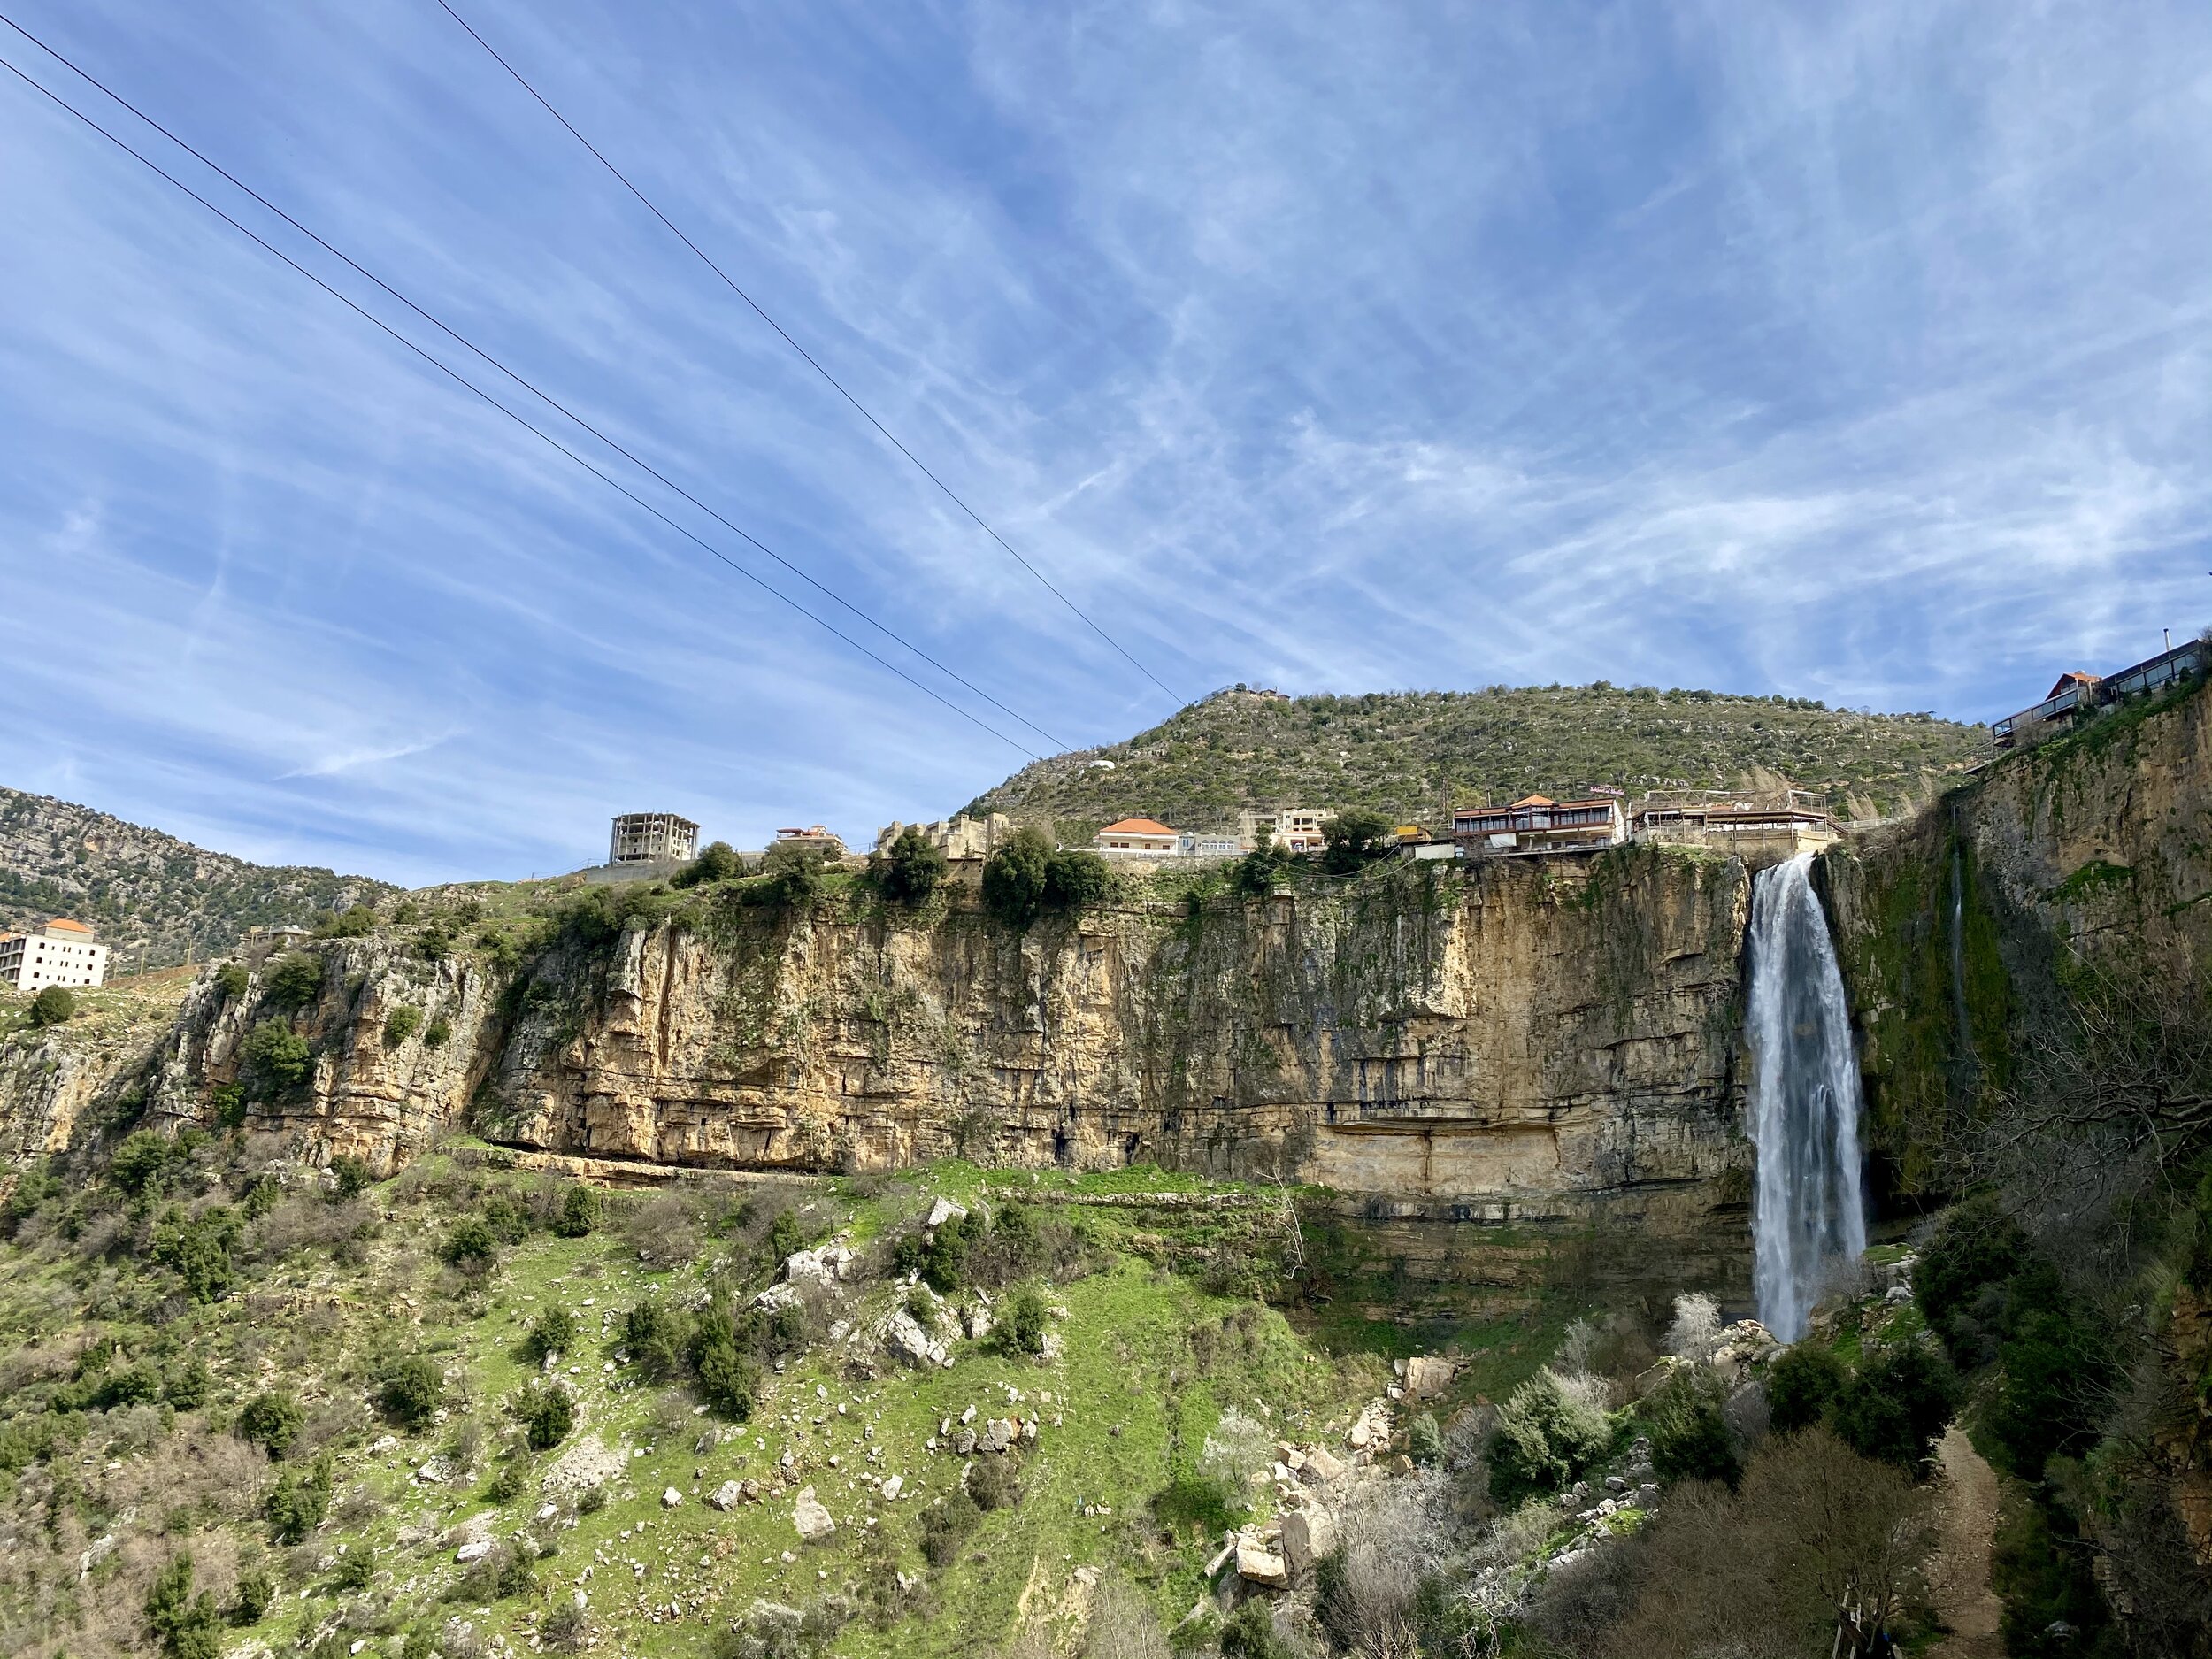 lebanon tourist visa for uae residents